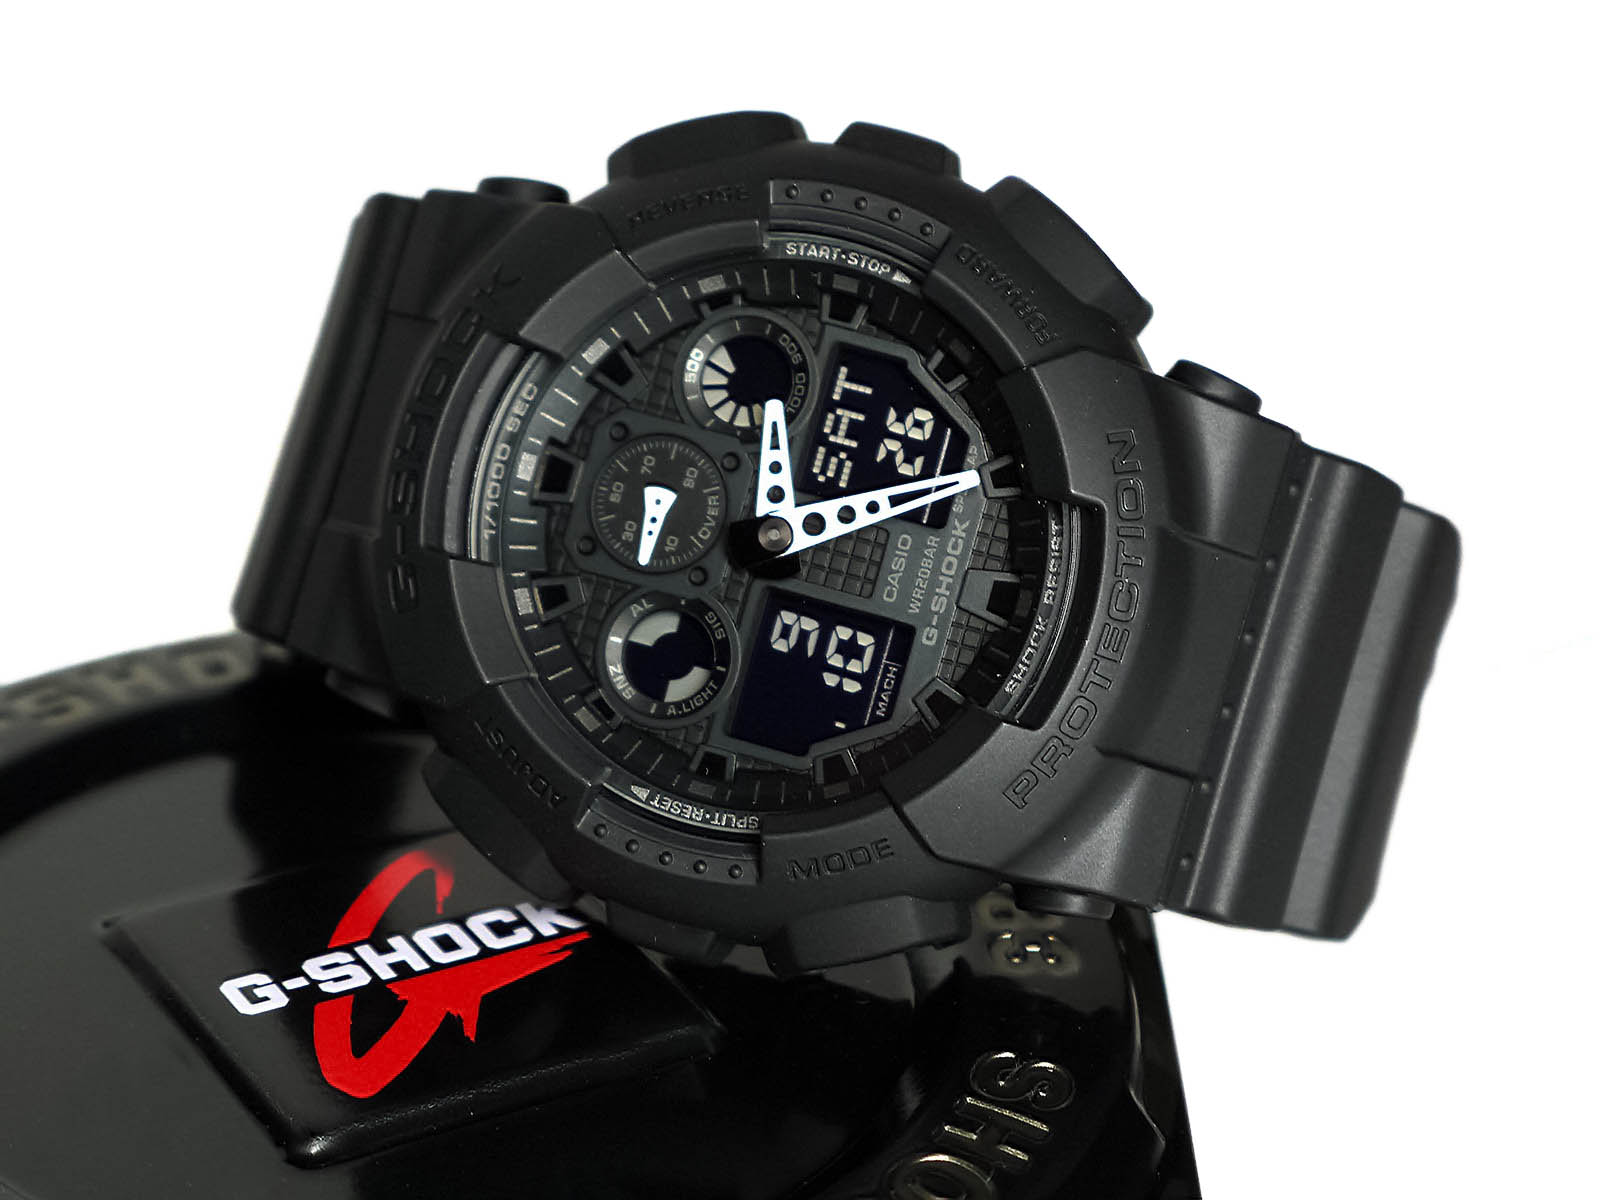 Đồng hồ Casio G-shock Military Series Watch có thiết kế hầm hố với kích thước tương đối lớn